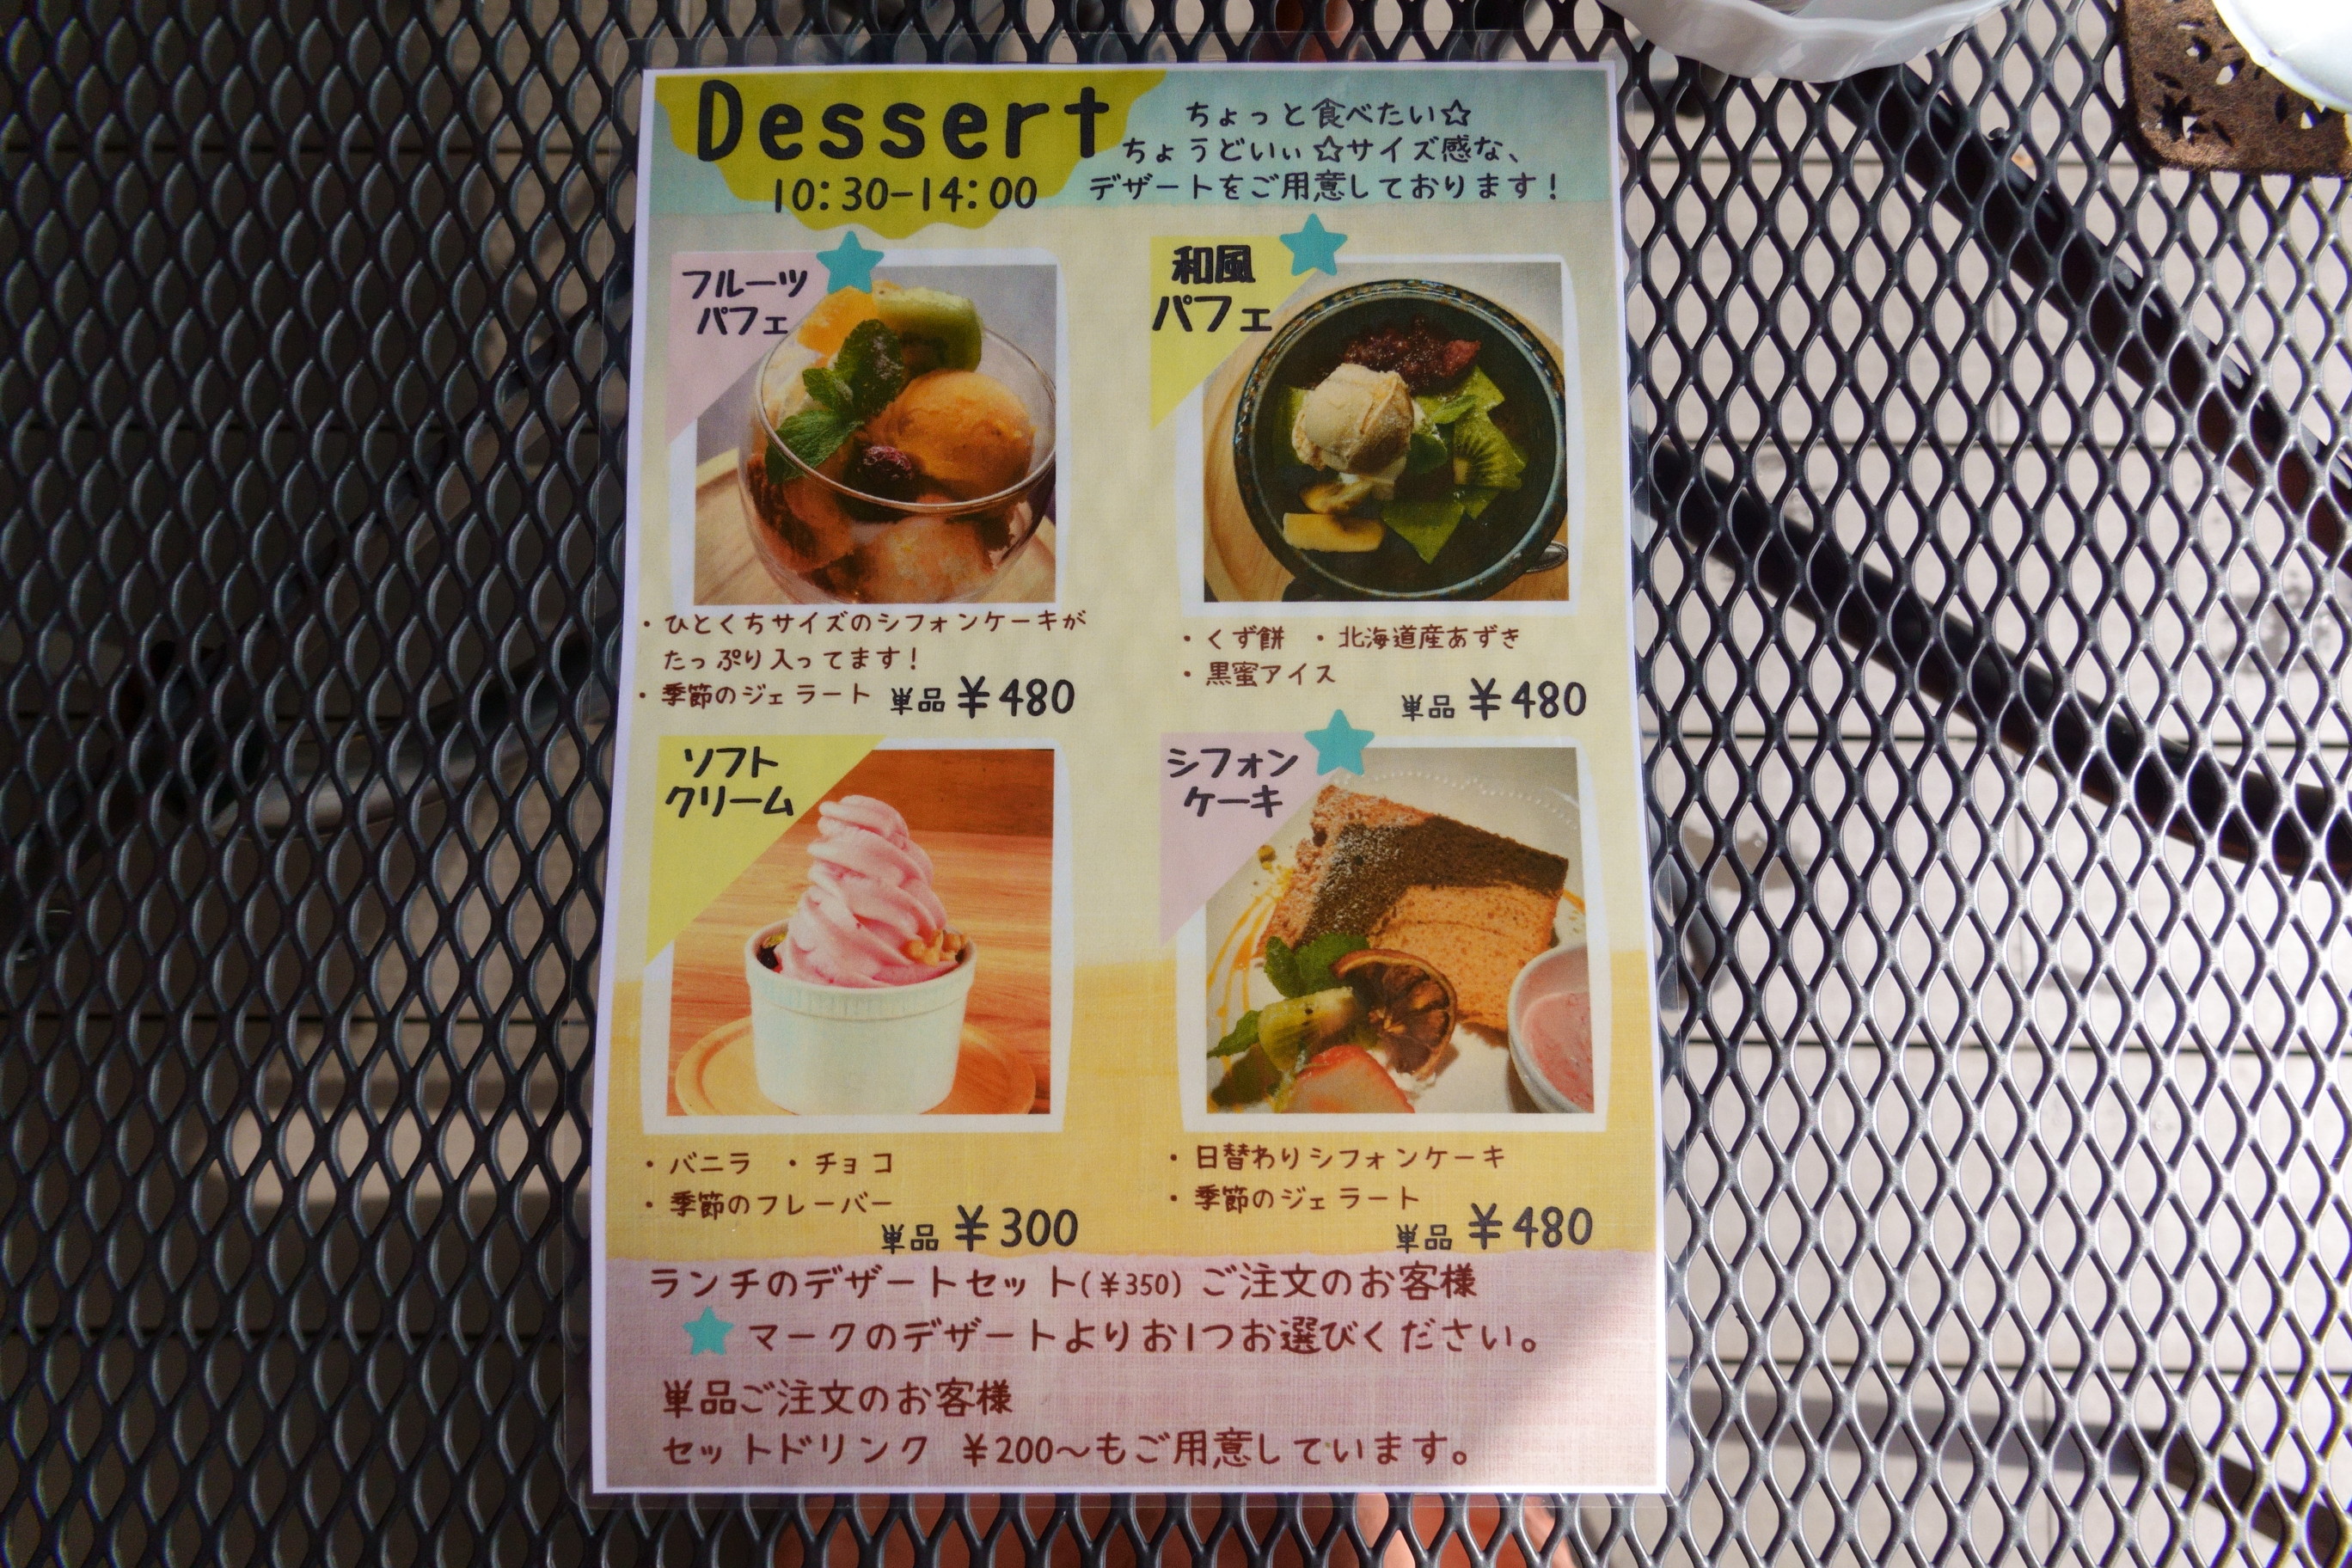 CALDA Dining+Cafe(カルダ ダイニングカフェ)